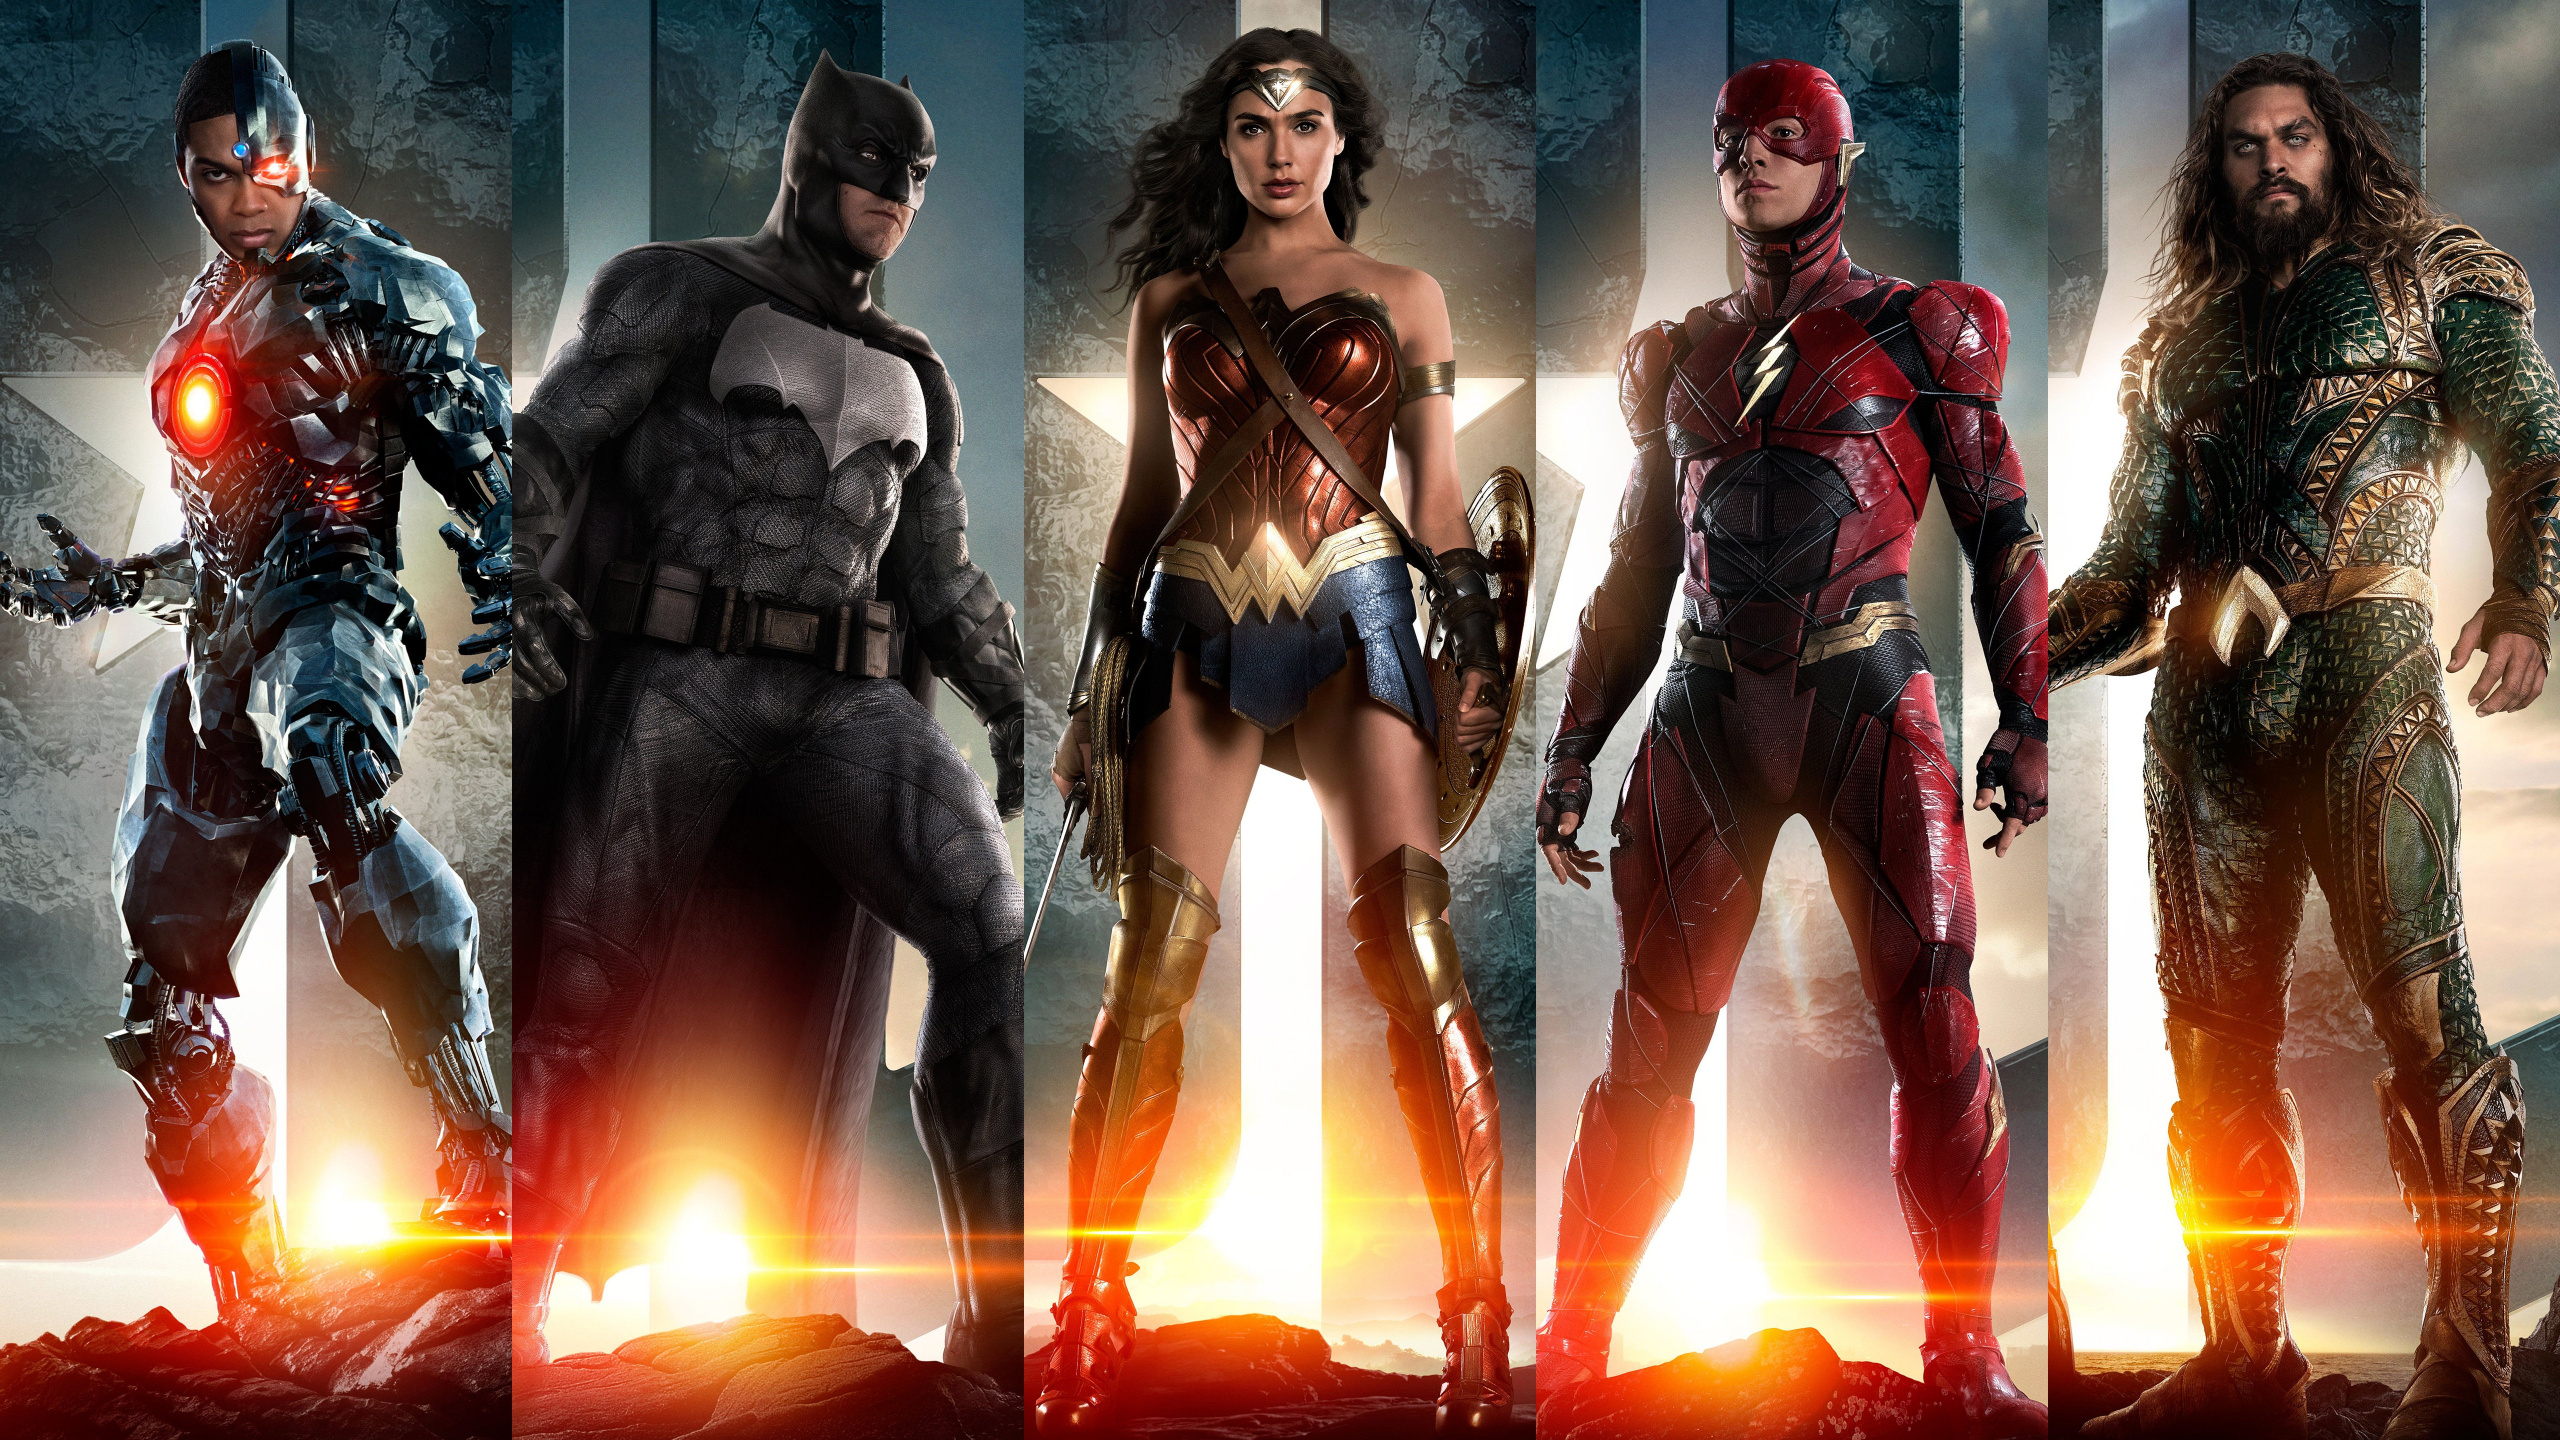 正义联盟, 蝙蝠侠, Dc漫画, 超级英雄, 动作片 壁纸 2560x1440 允许